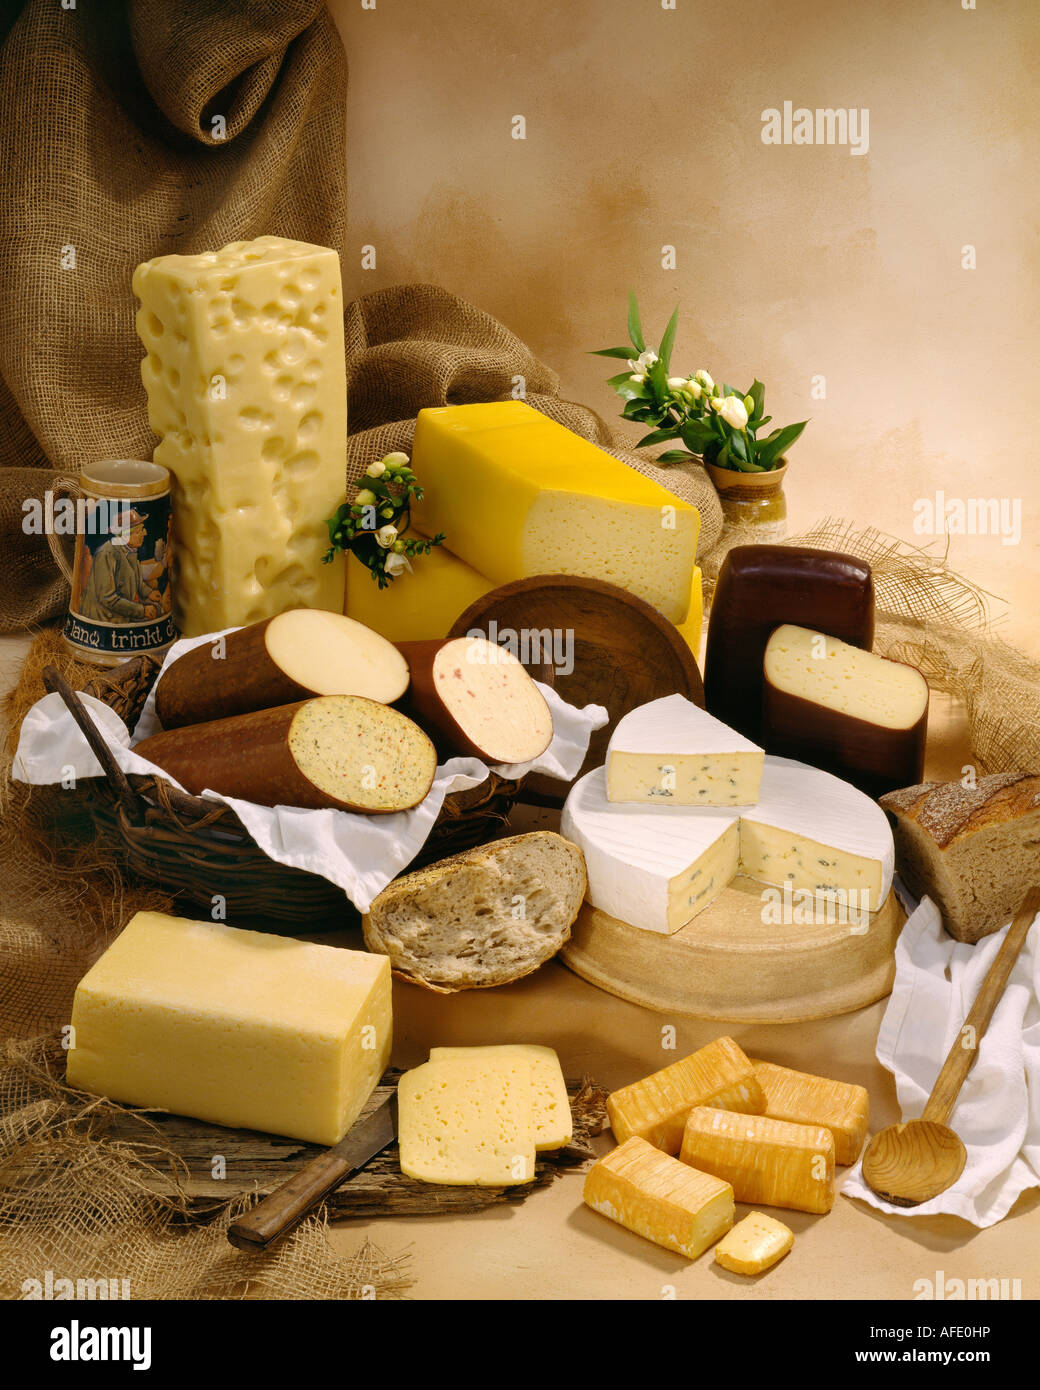 Deutscher Käse in Gruppe Farbfoto auf warm getönten gesprenkelte Hintergrund. Hochformat, Studio Tischplatte. Klassisches Bild. Stockfoto